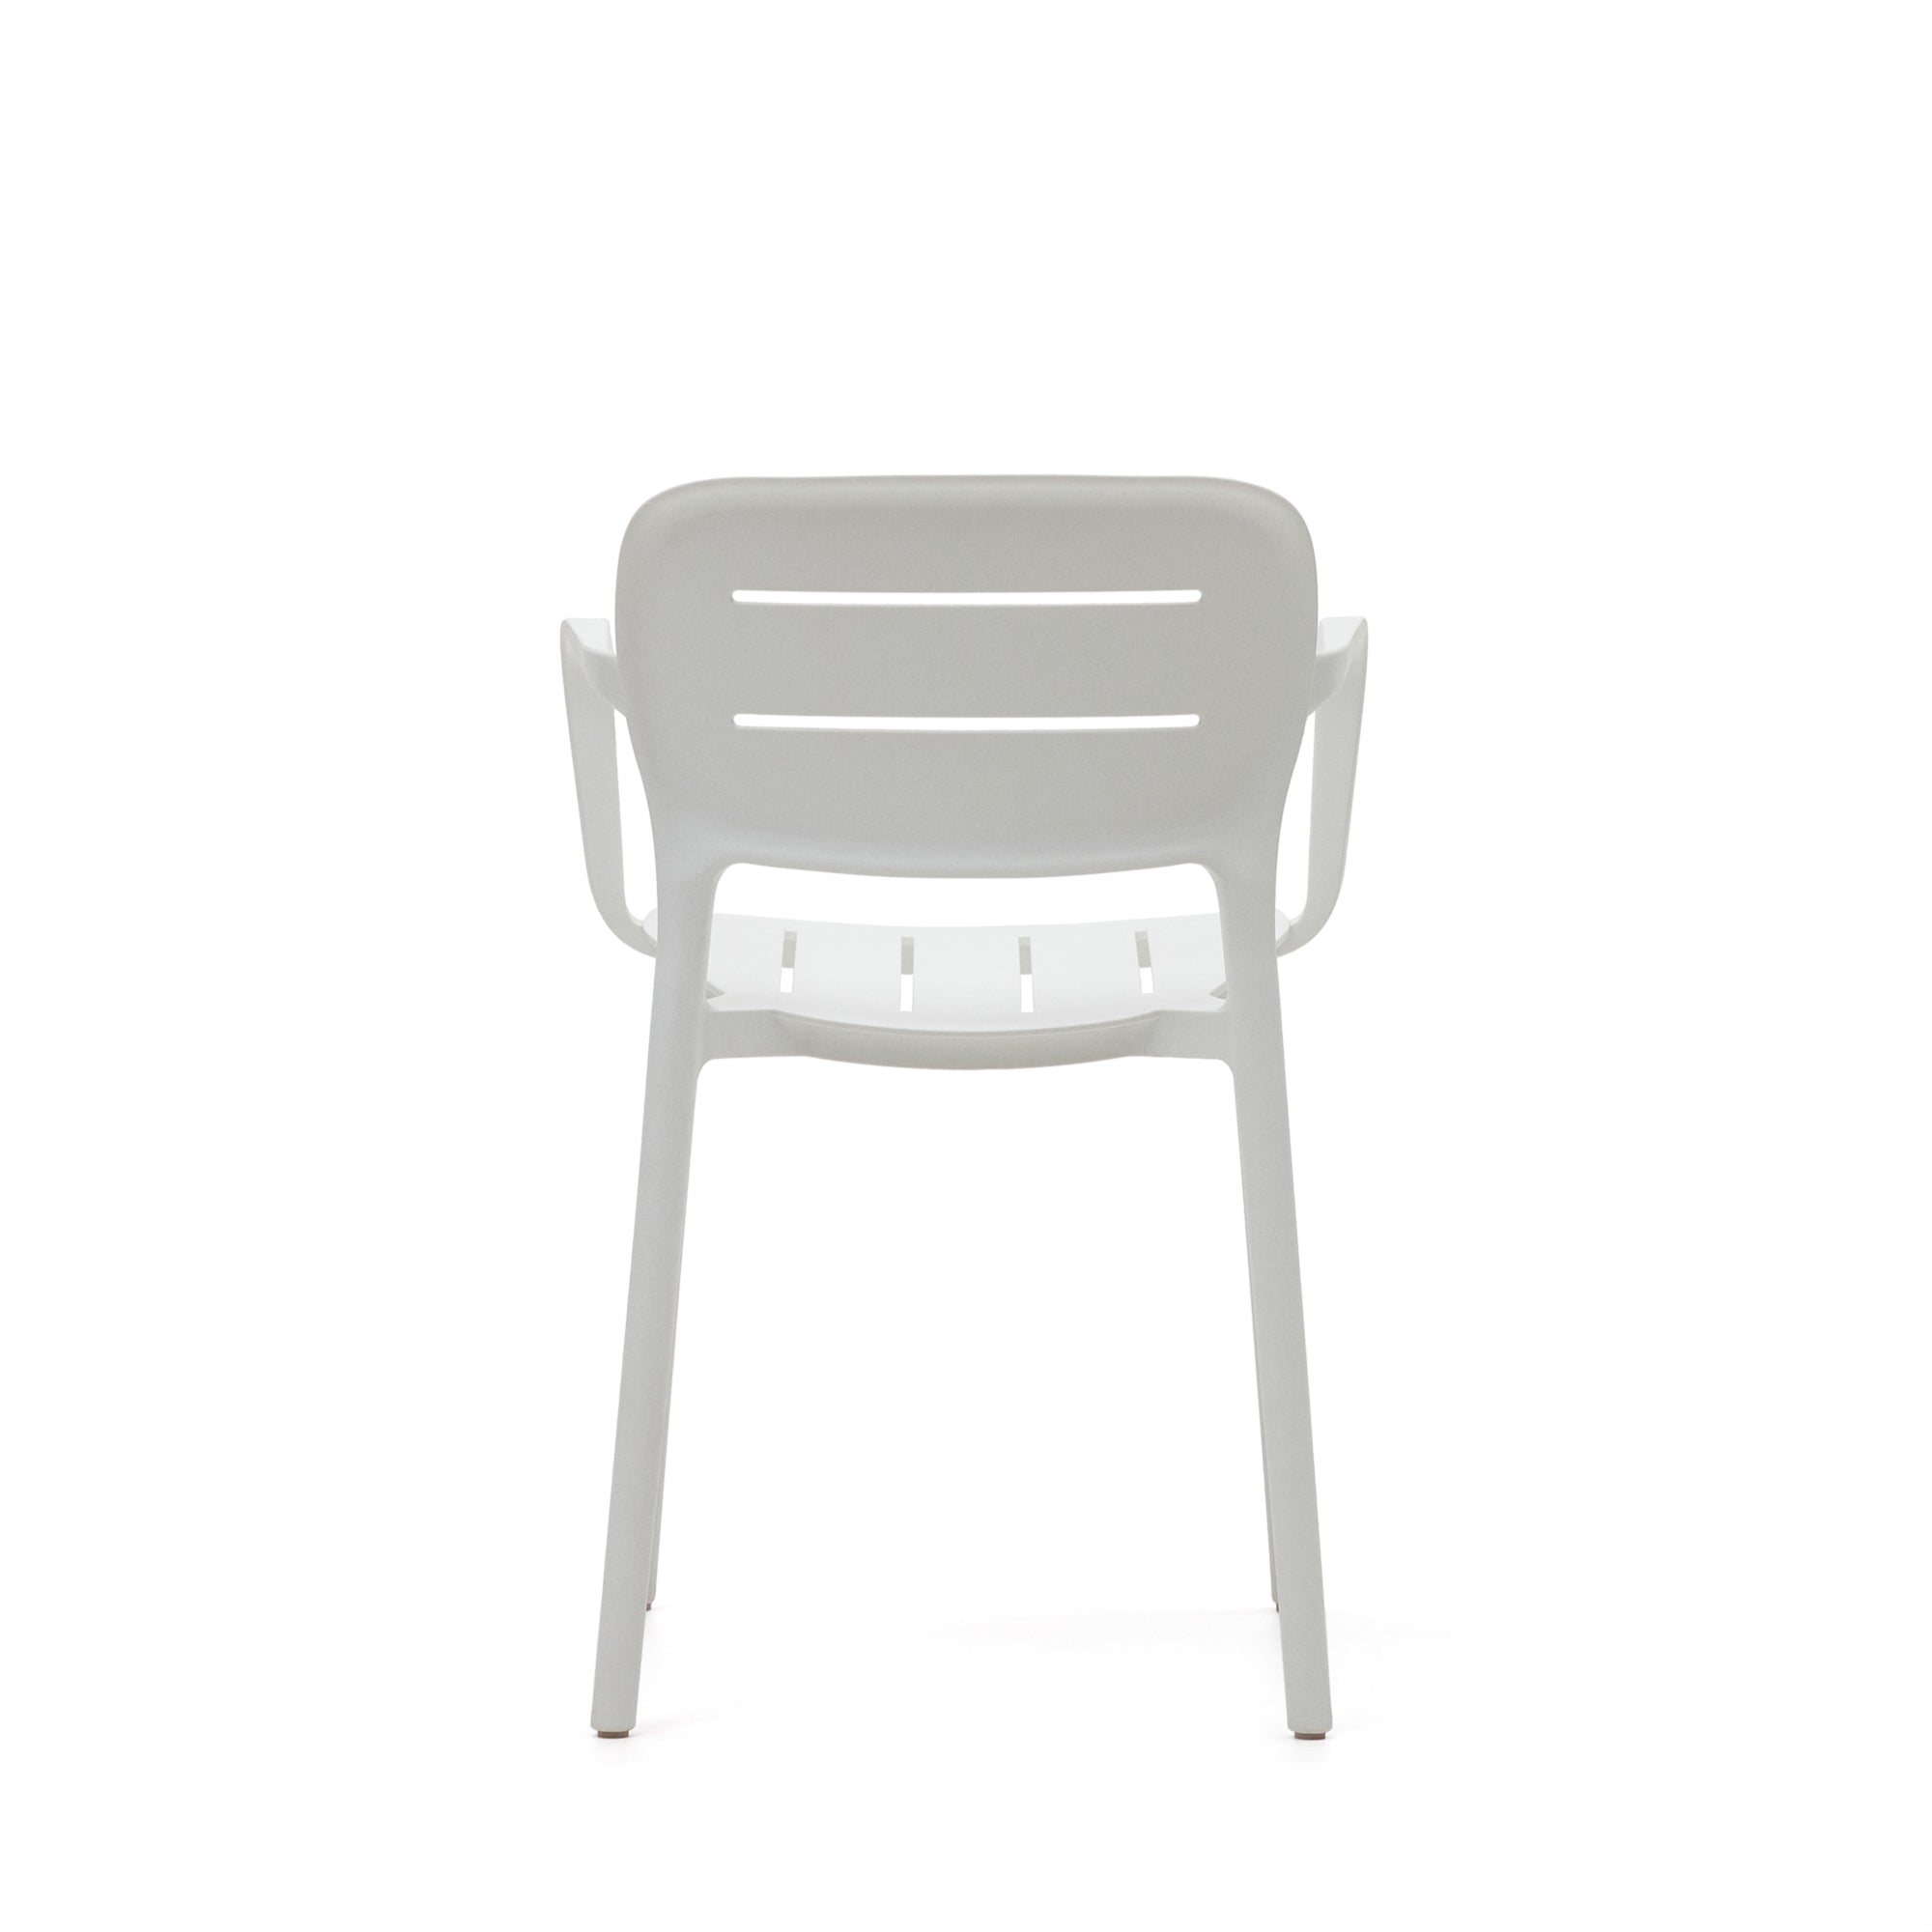 Morella egymásba rakható kültéri szék fehér színben